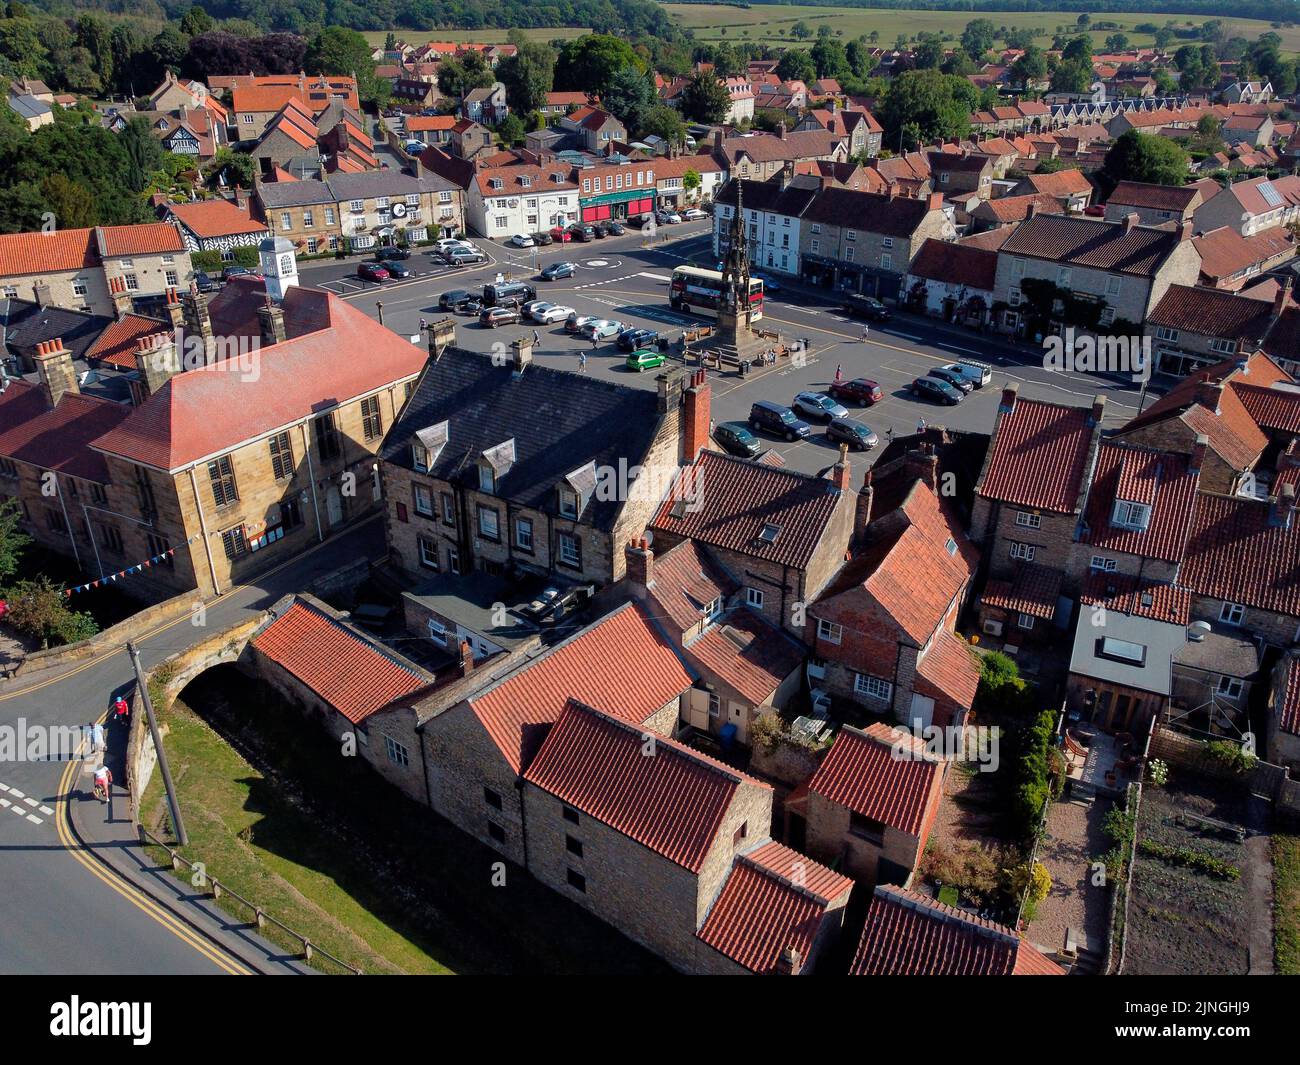 Vista aérea del pueblo de Helmsley en el distrito Ryedale de North Yorkshire, Reino Unido. Foto de stock